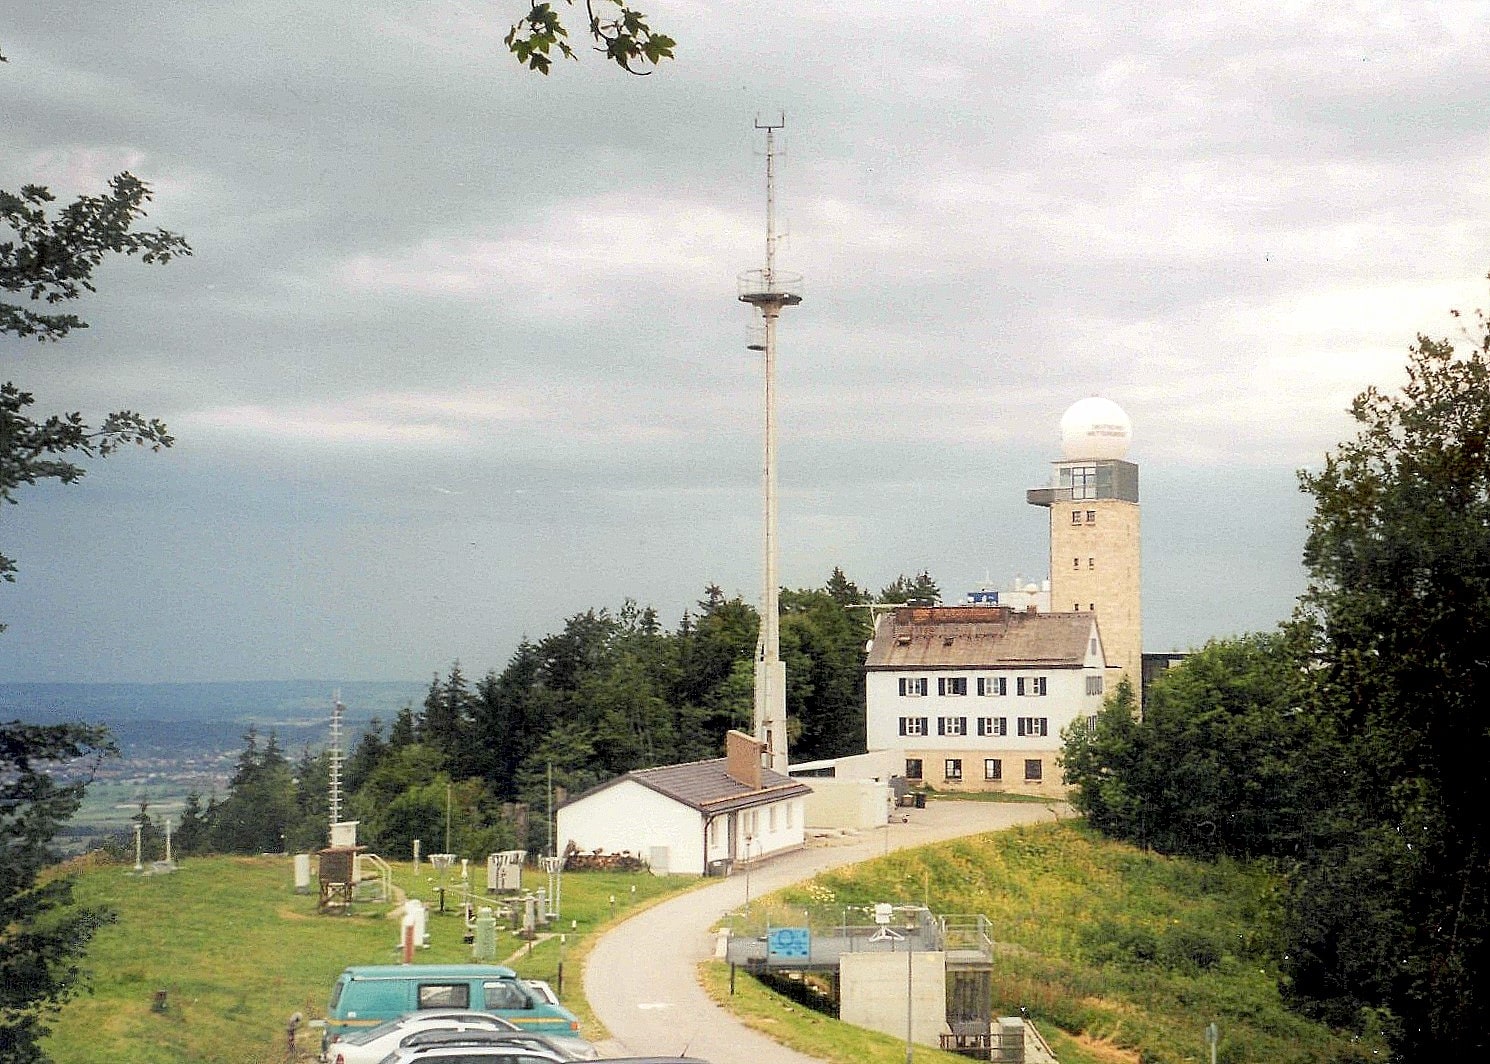 Hohenpeißenberg, Germany